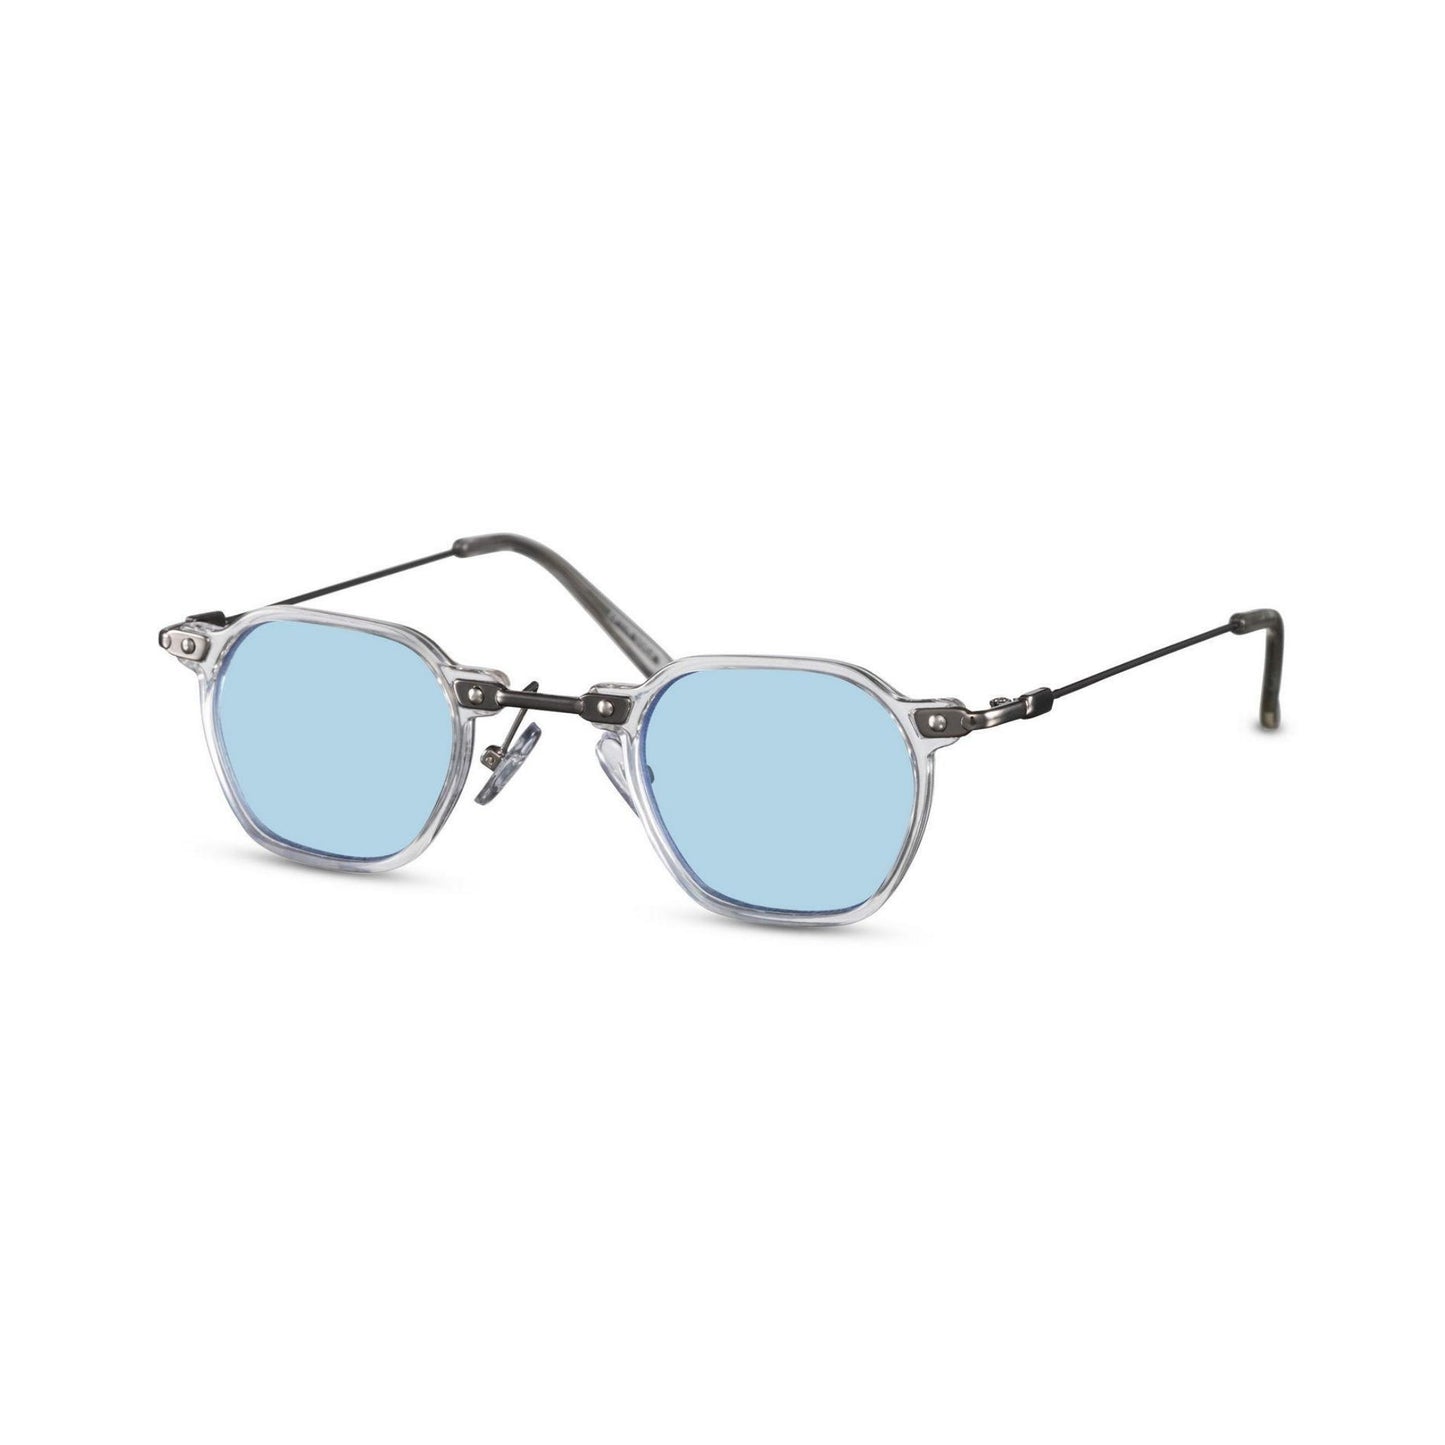 Γυαλιά ηλίου (retro) Mirage της Exposure Sunglasses με προστασία UV400 με άσπρο σκελετό και μπλε φακό. Πλάγια προβολή.